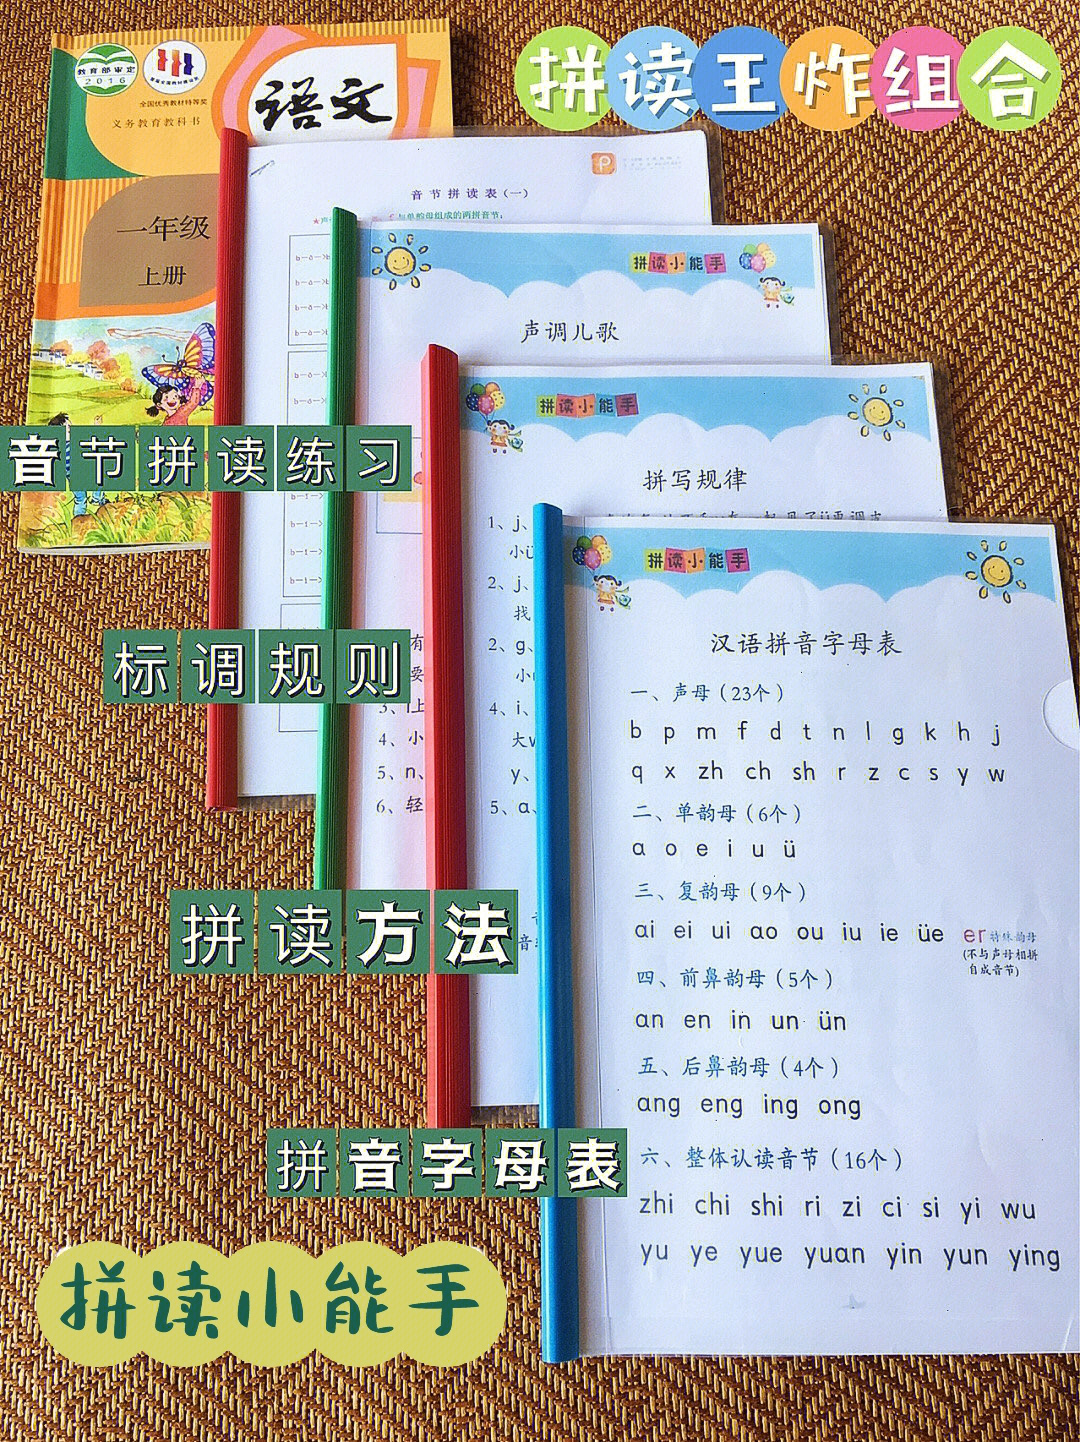 16615汉语拼音字母表26615声调儿歌/标调规则36615拼写